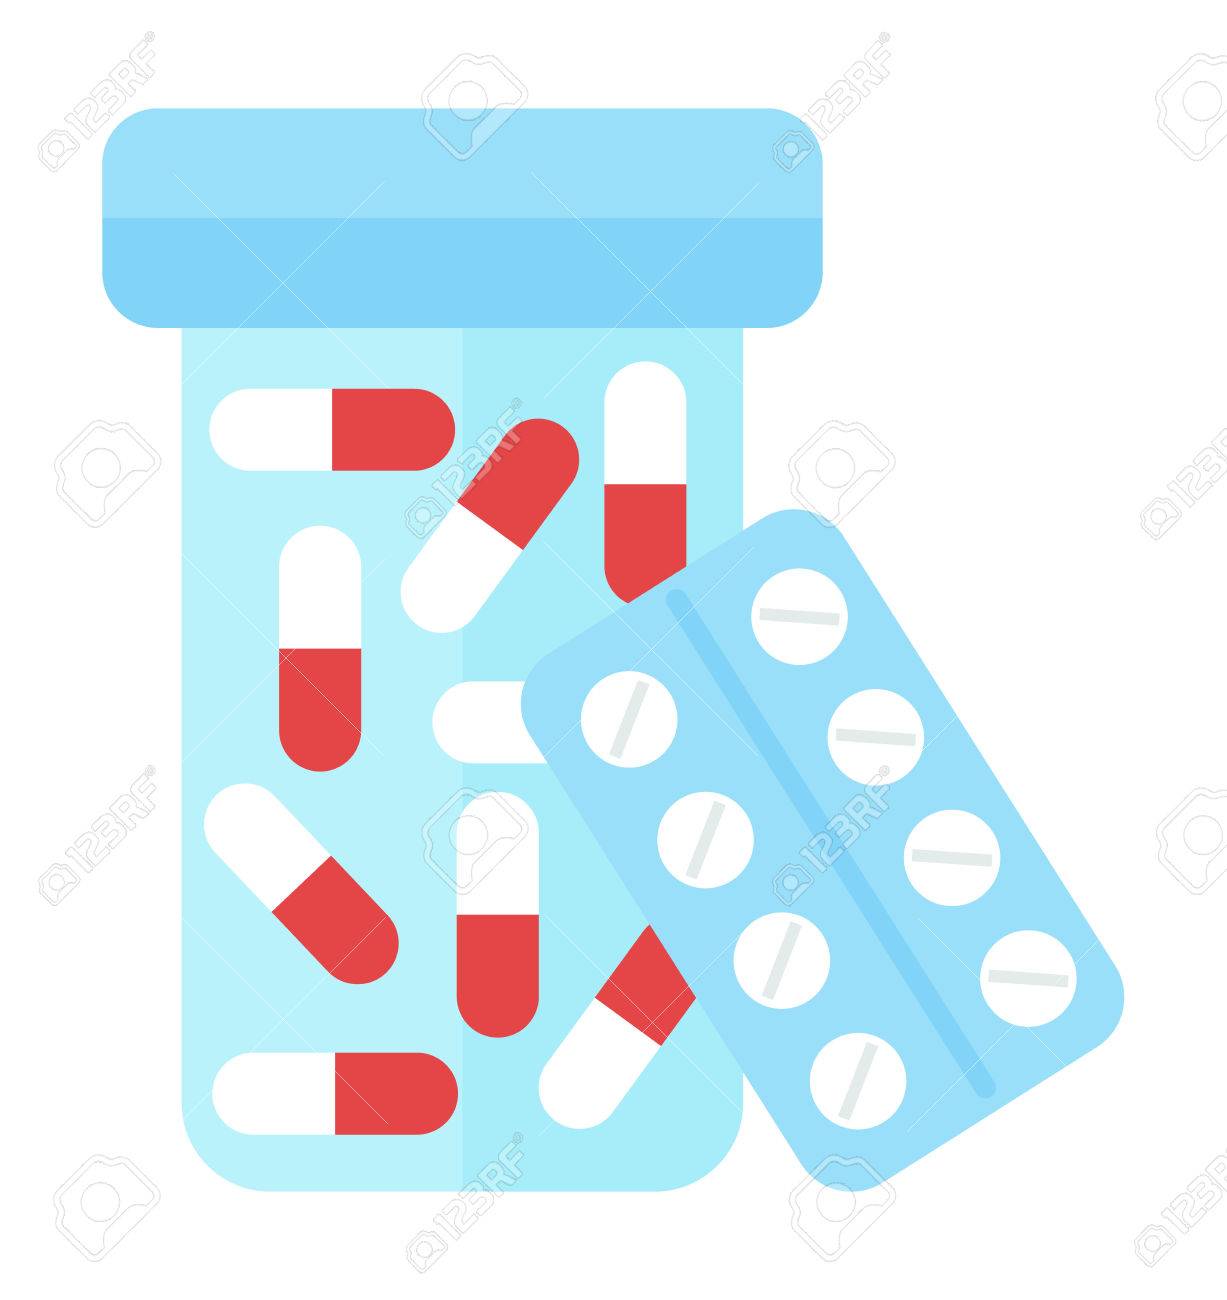 Medicine clipart antibiotic. Free pharmaceuticals download clip